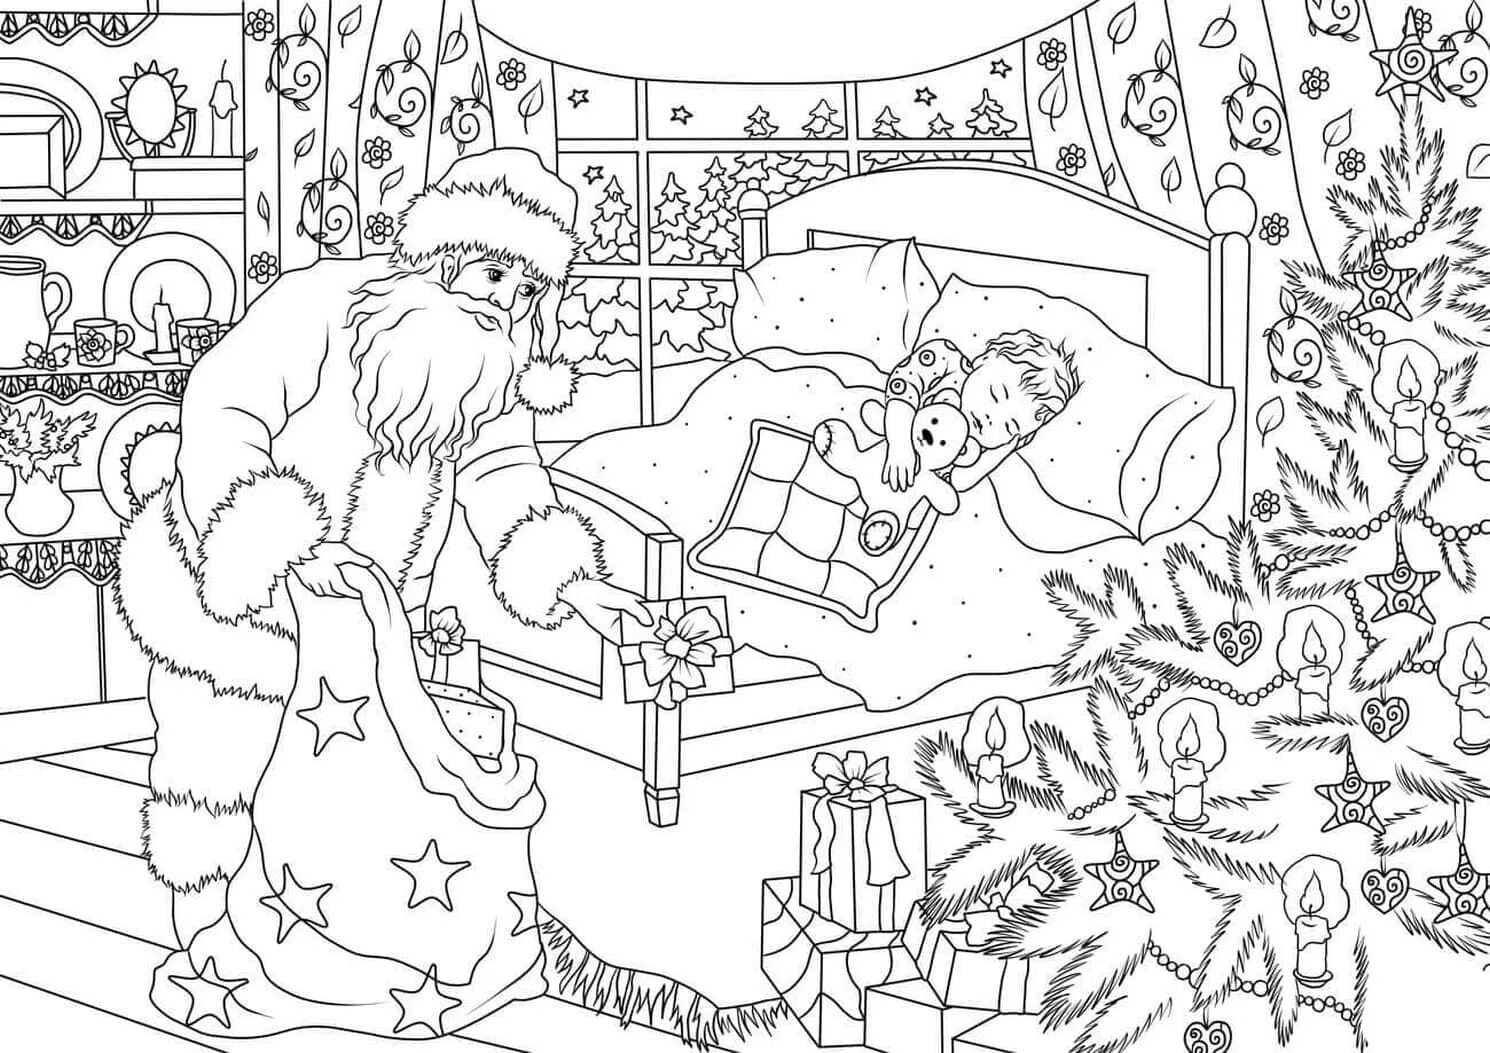 Royal Christmas miracle coloring book